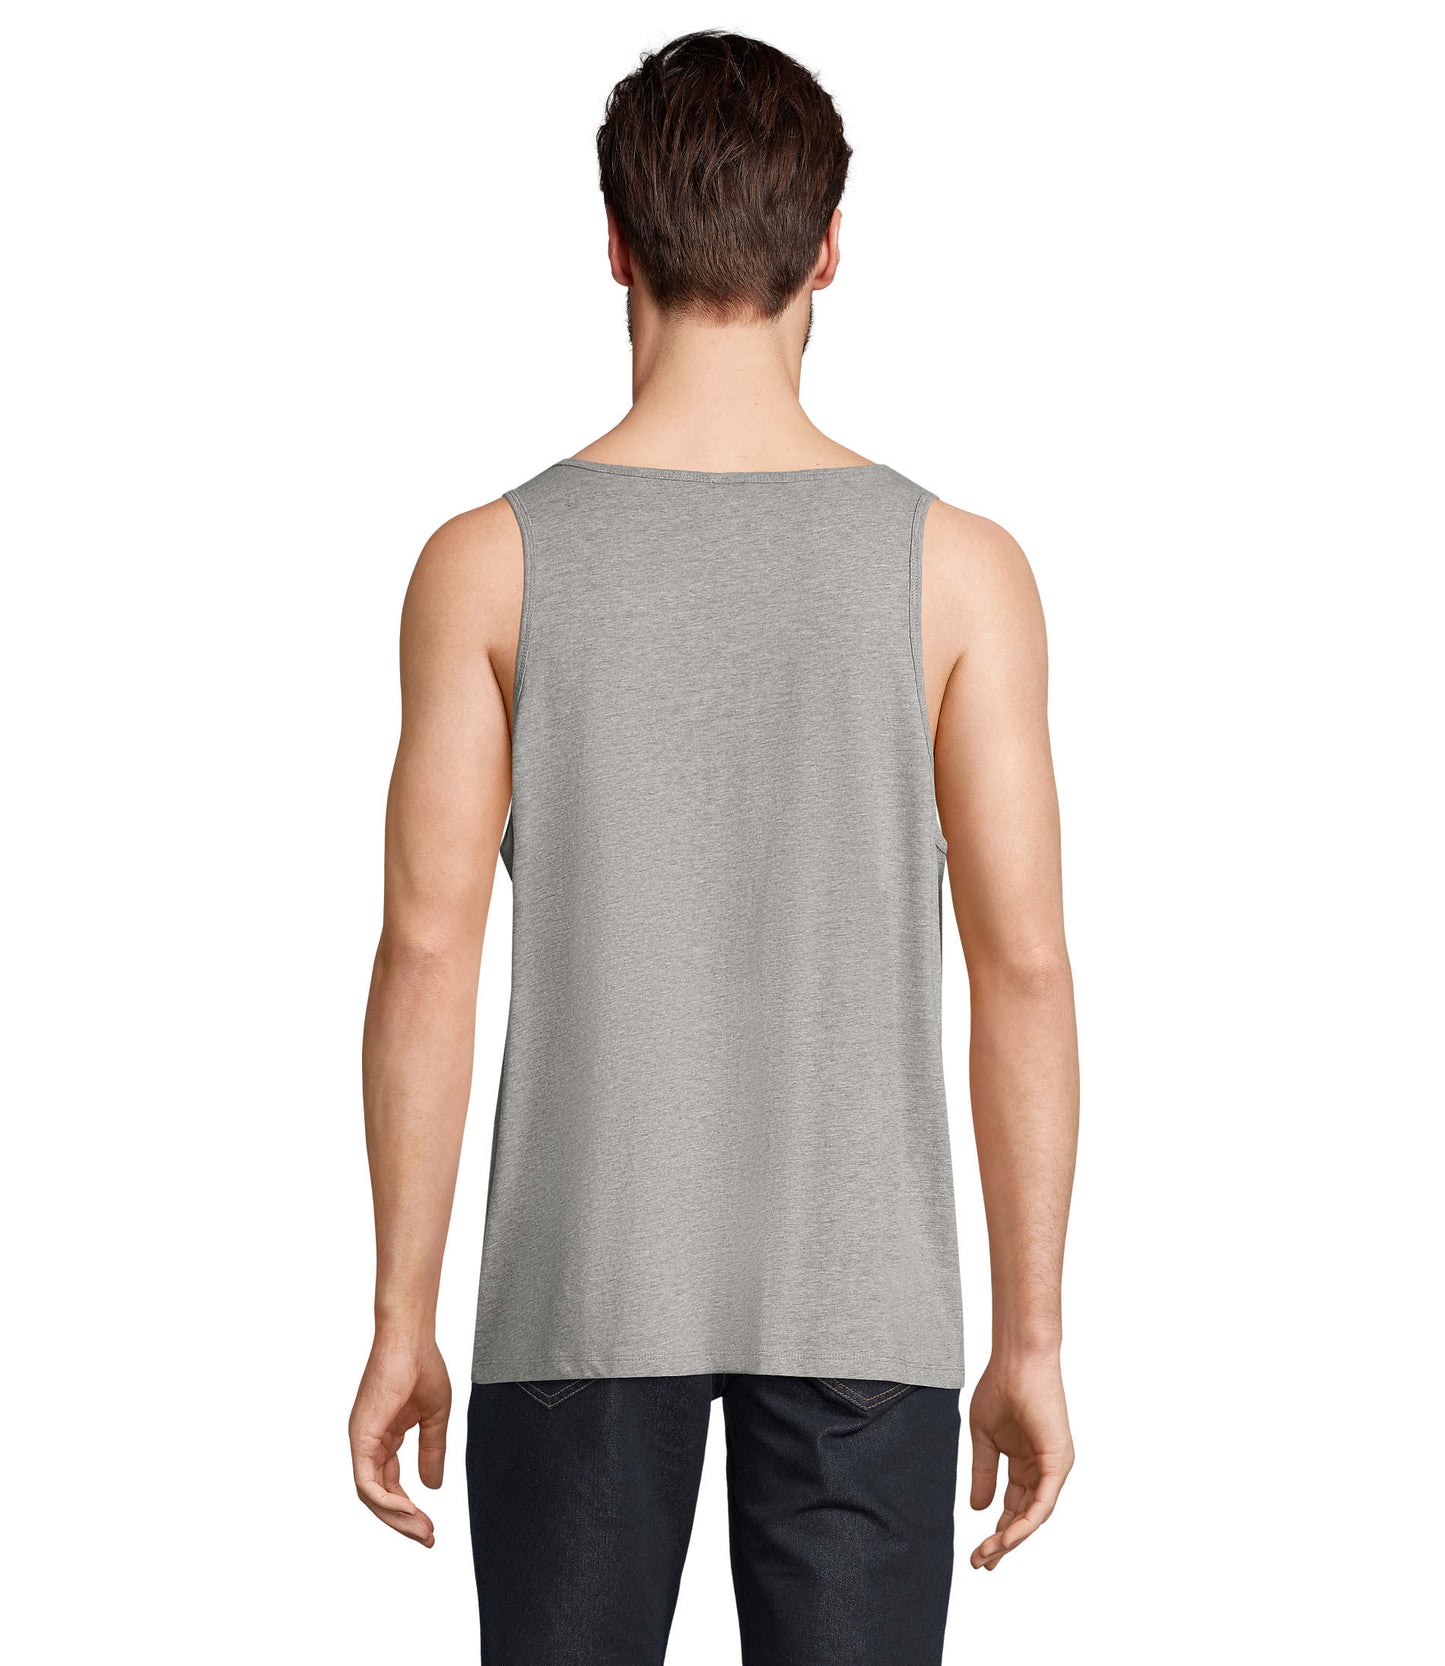 T-shirt de alças unissexo, cor cinzento matizado